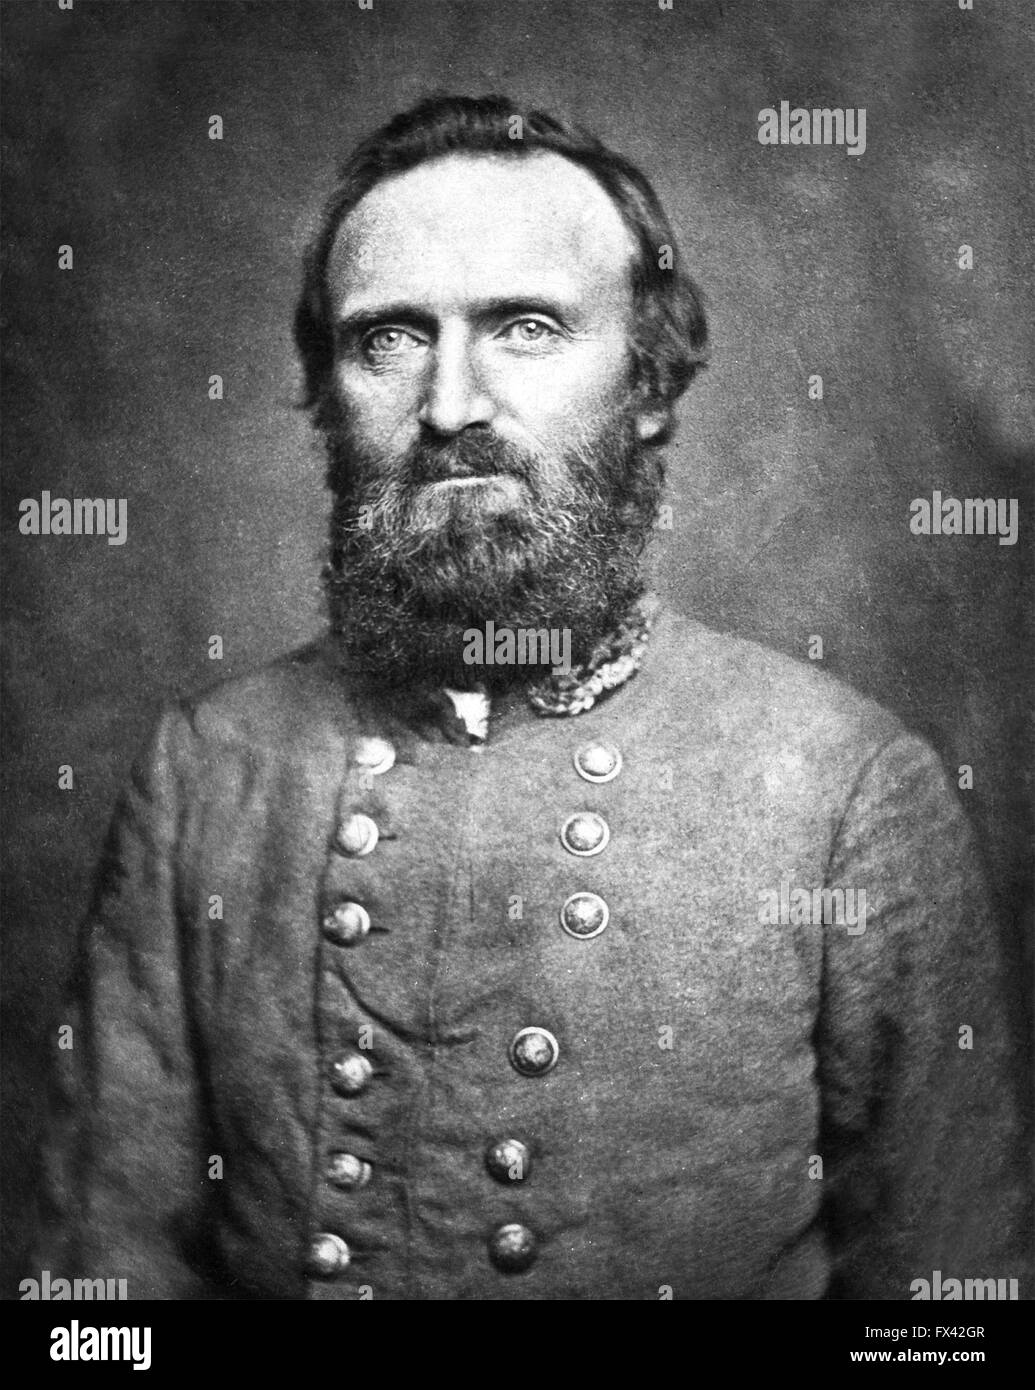 General "Stonewall" Jackson, General der Konföderierten während des amerikanischen Bürgerkriegs. General Thomas Jonathan Stonewall"" Jackson Stockfoto